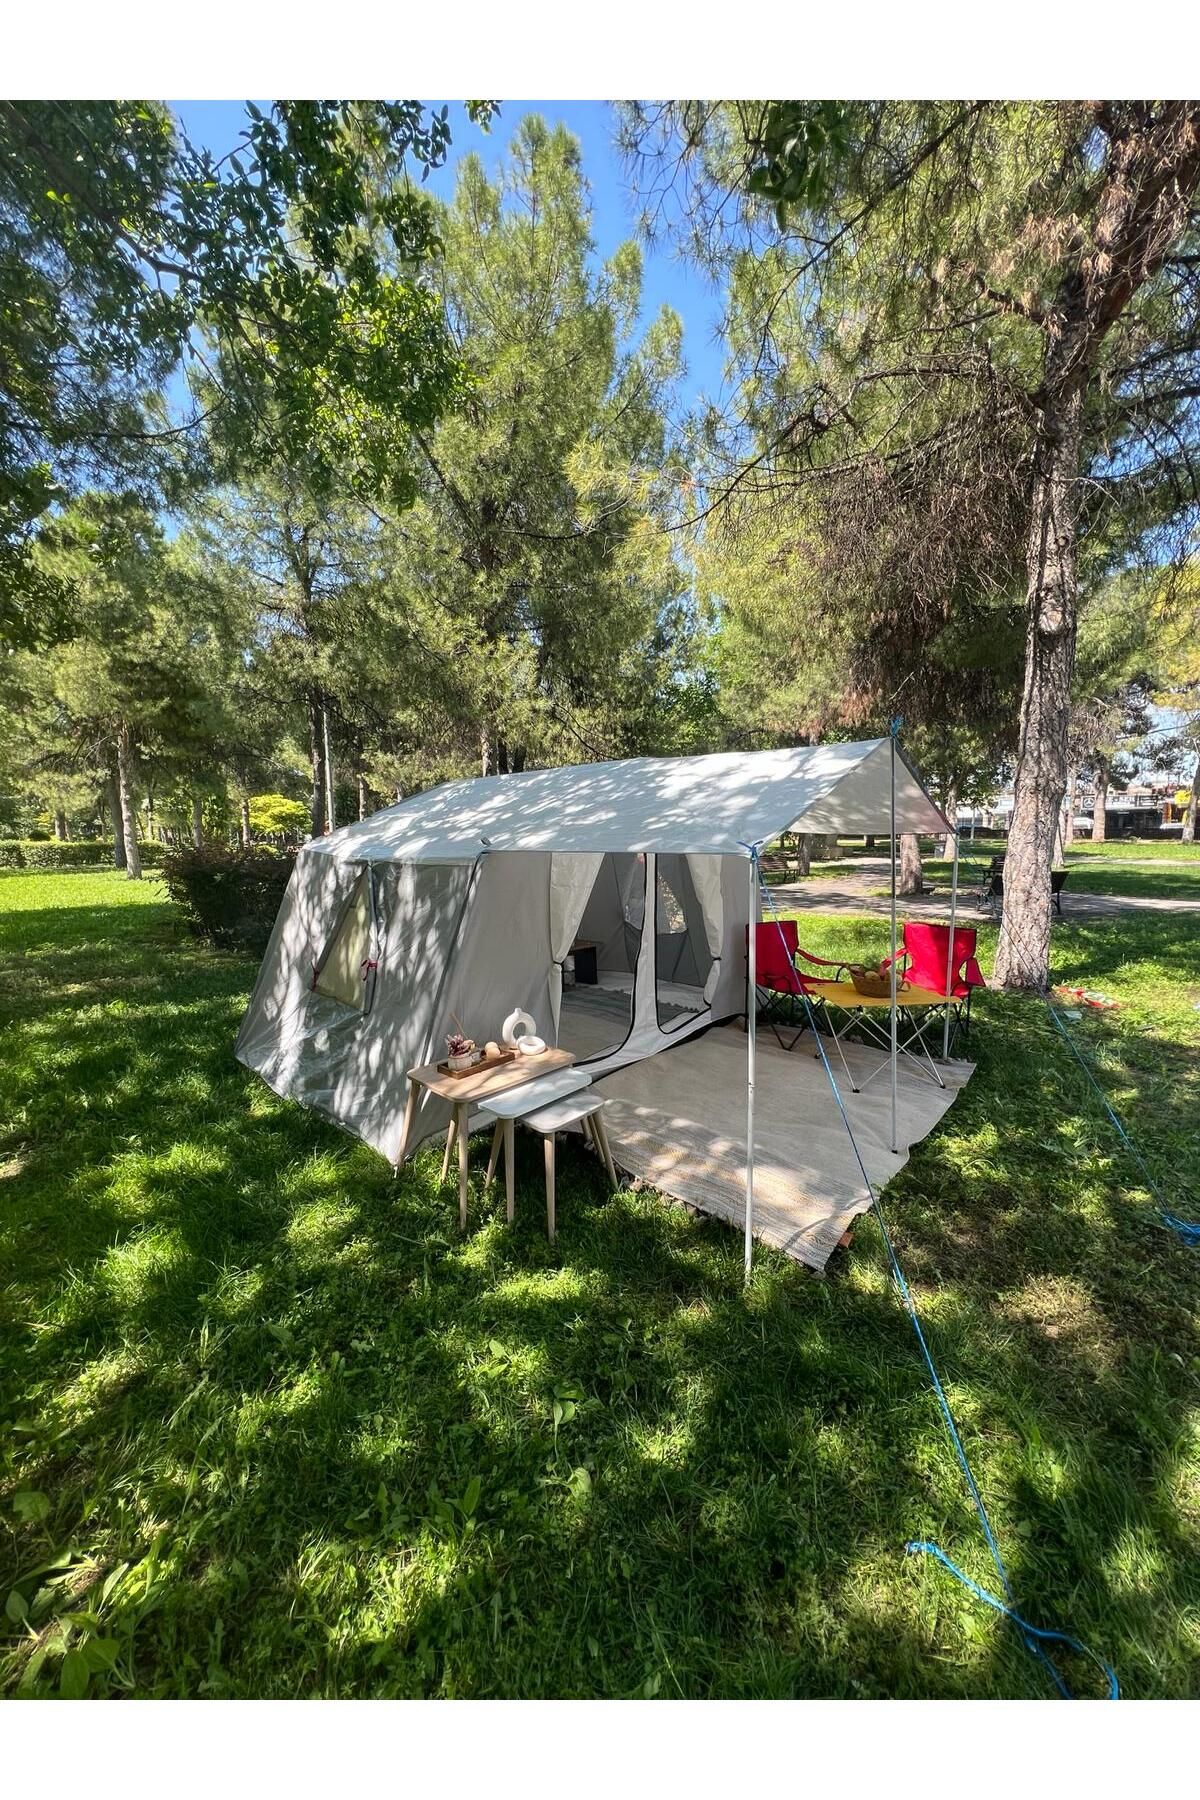 yamaç çadır 2 Odalı İçten Kurmalı Kaliteli Kamp Çadırı (ARA BÖLME DAHİLDİR)